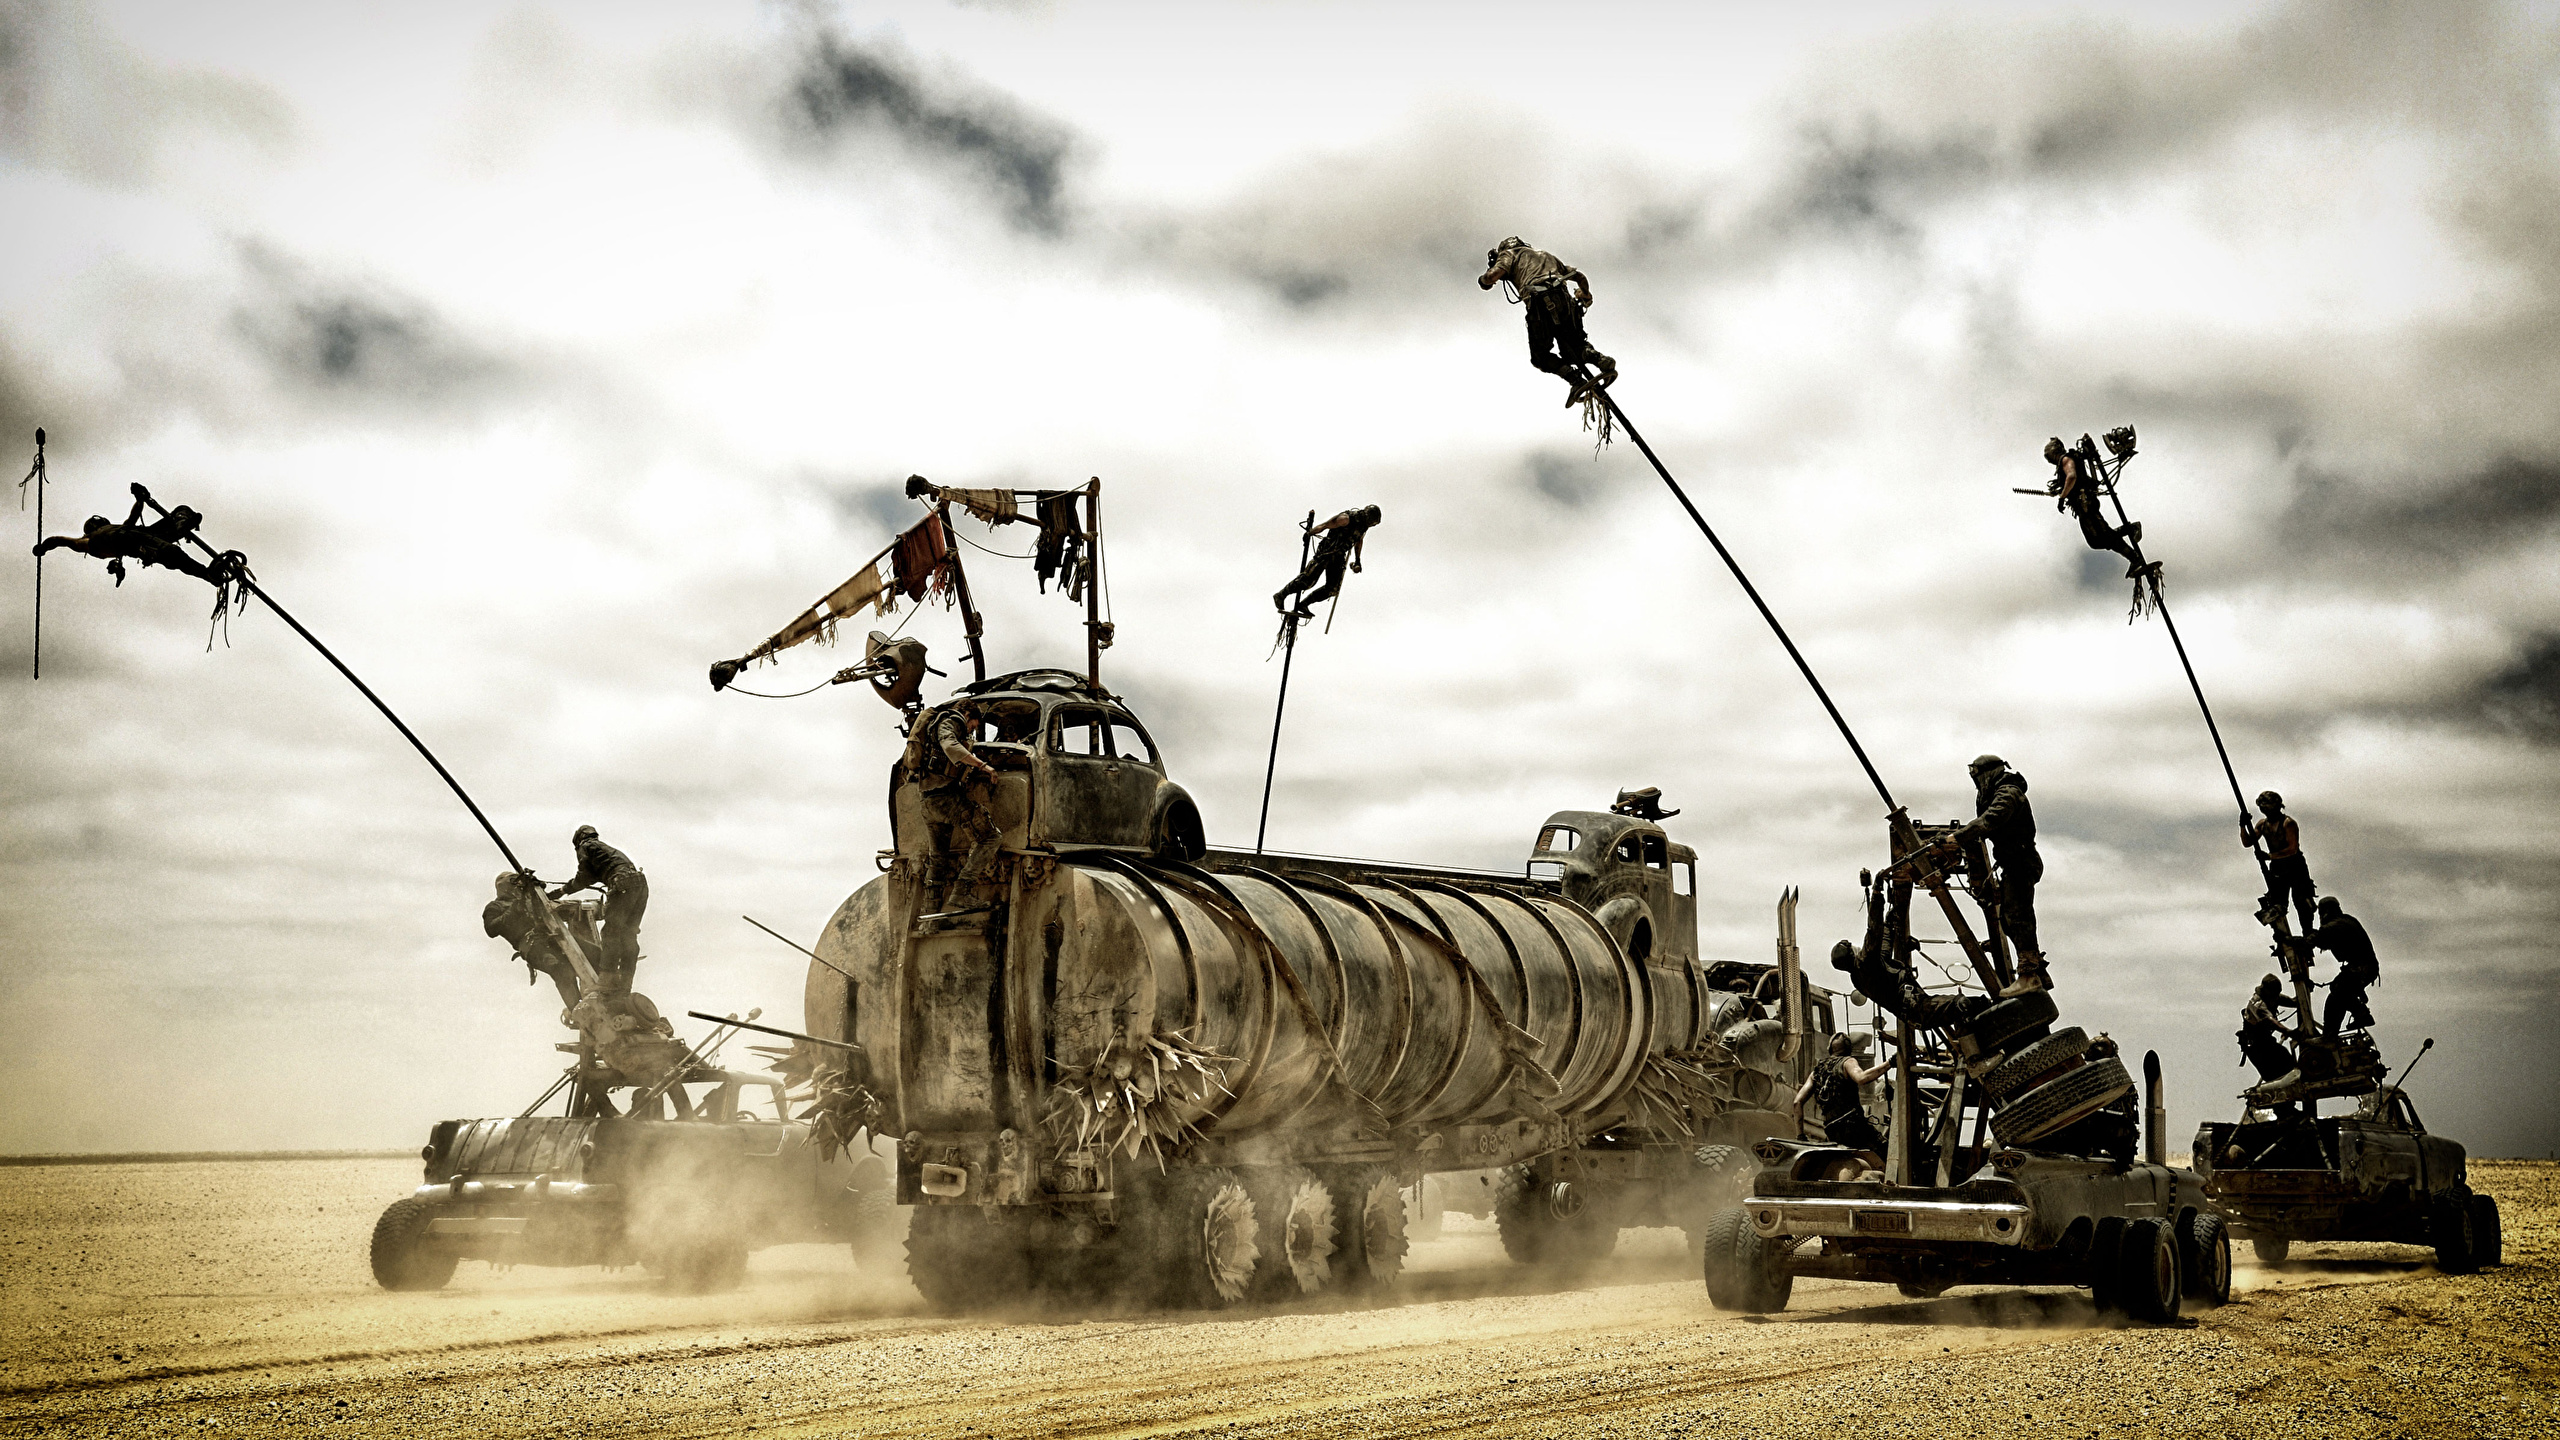 壁紙 2560x1440 マッドマックス 怒りのデス ロード 砂漠 貨物自動車 映画 ダウンロード 写真